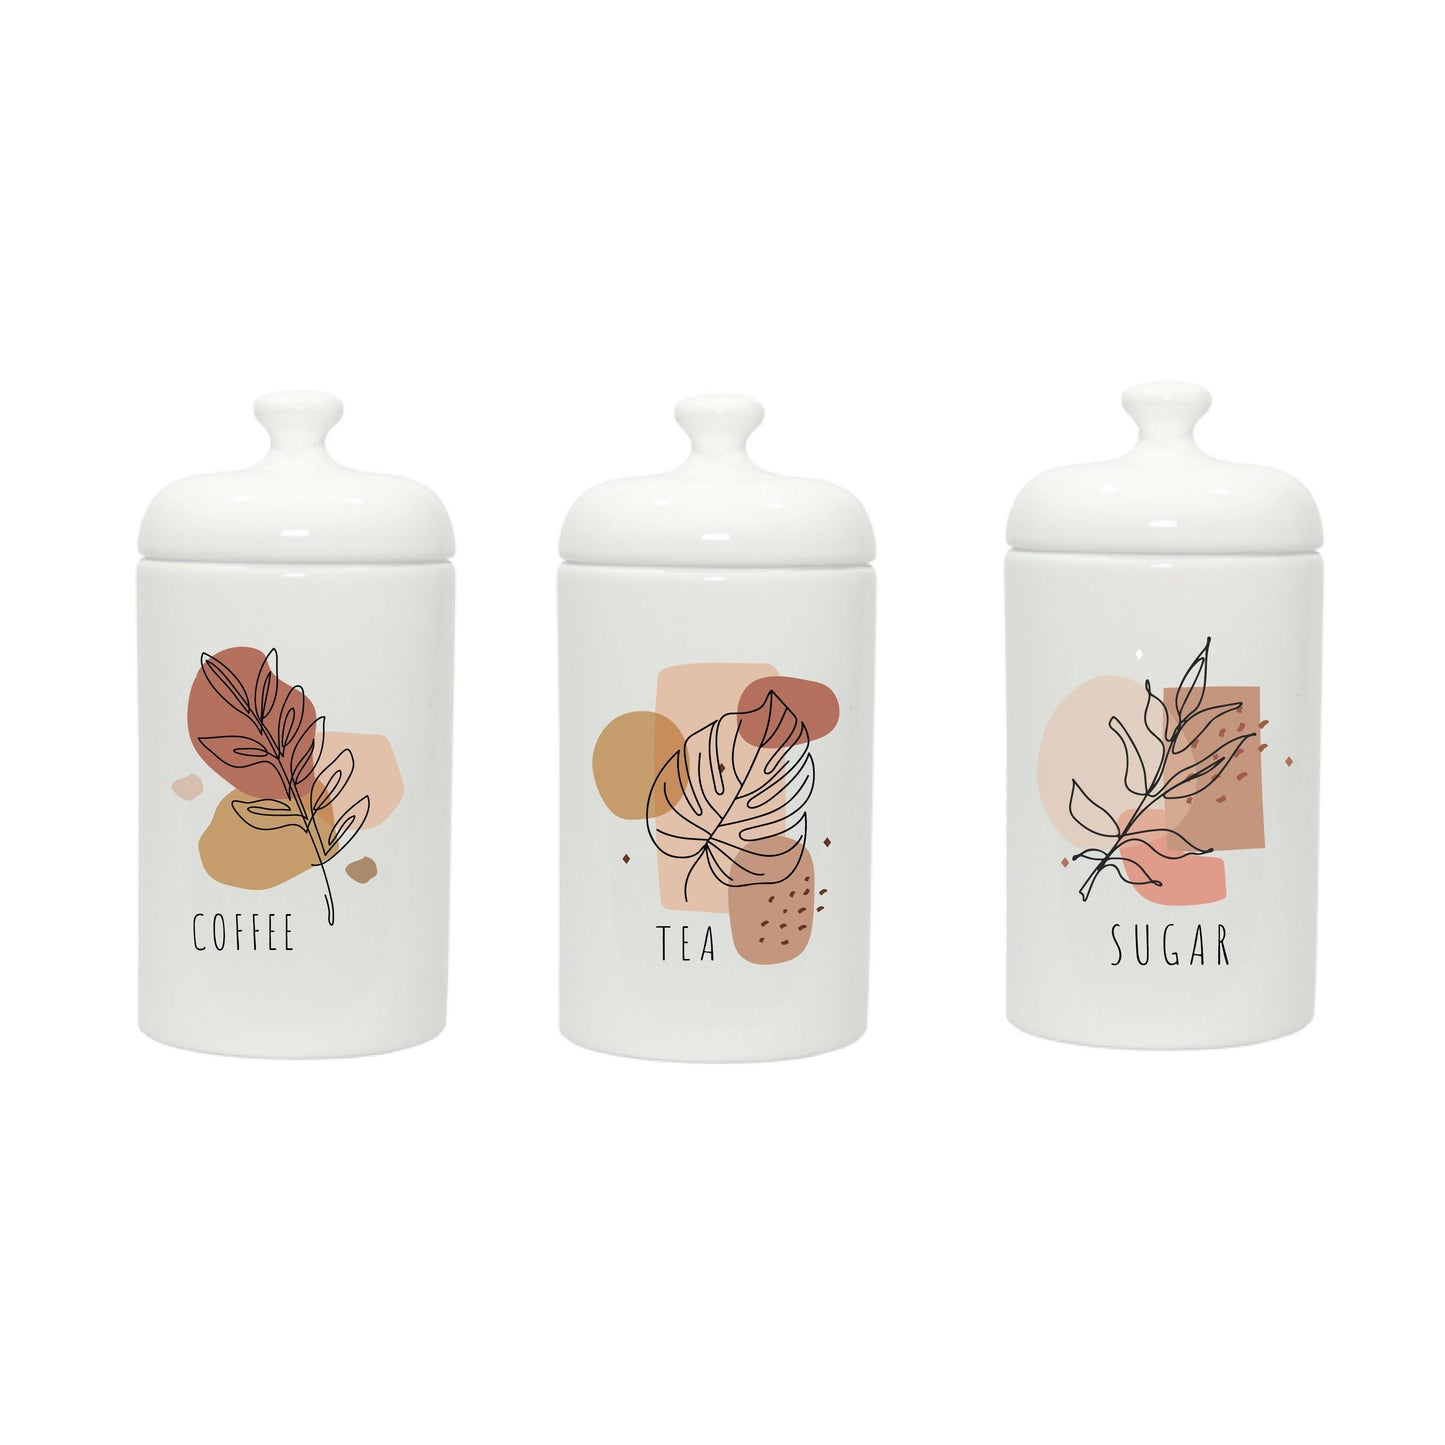 Coffee, Tea, Sugar - Vintage Ceramic Jar - Set of 3